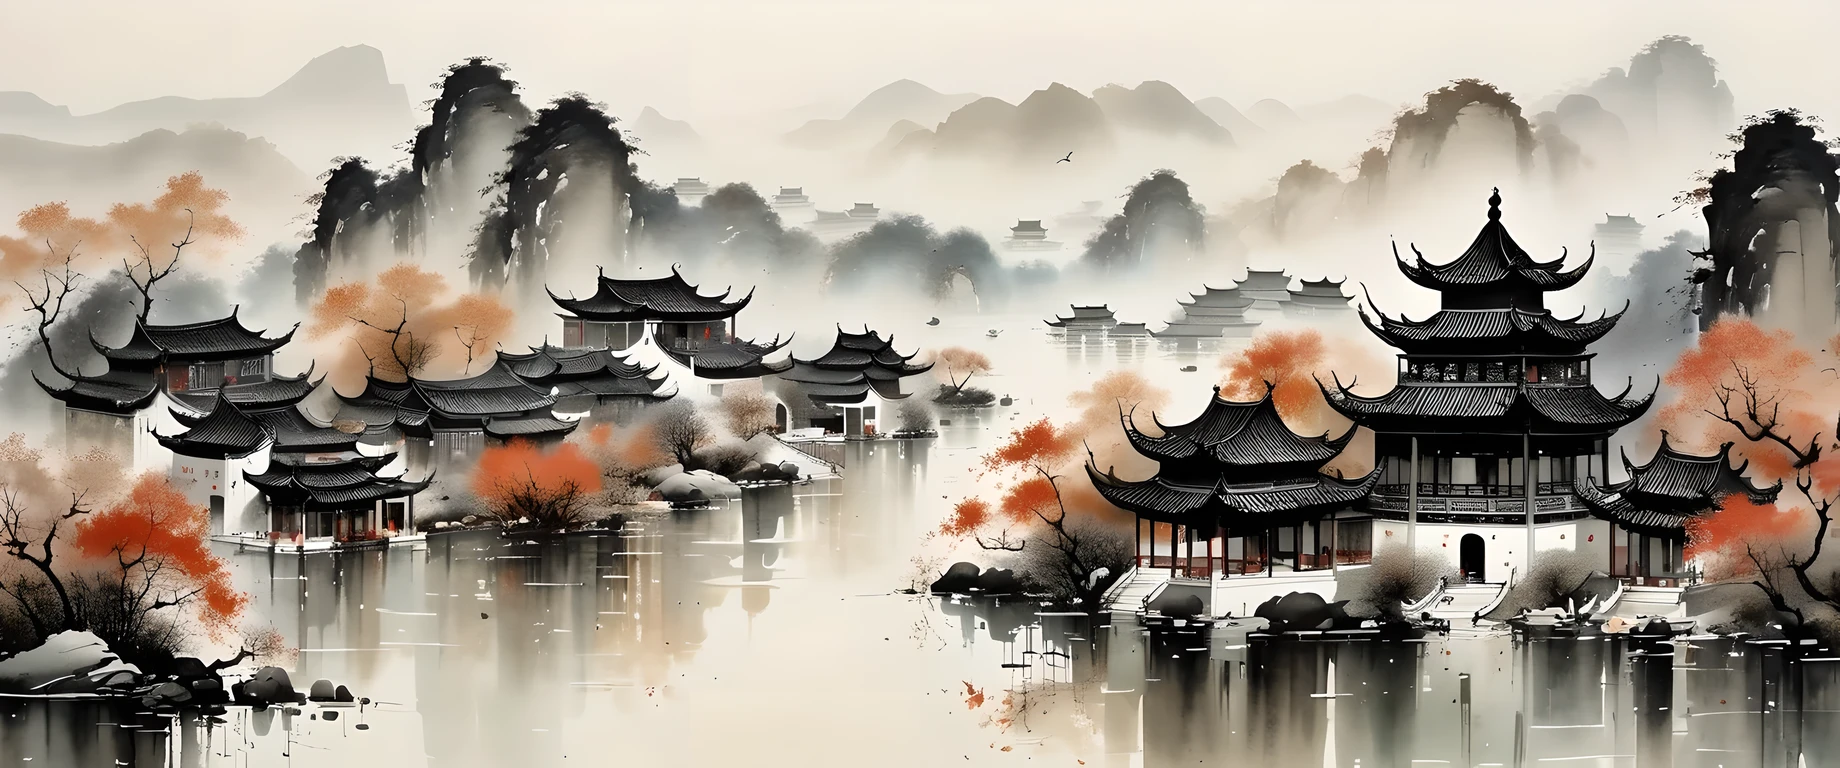 精美的水墨藝術, 實際的, 詳細的中國建築, Wu Guanzhong style, 褪色

